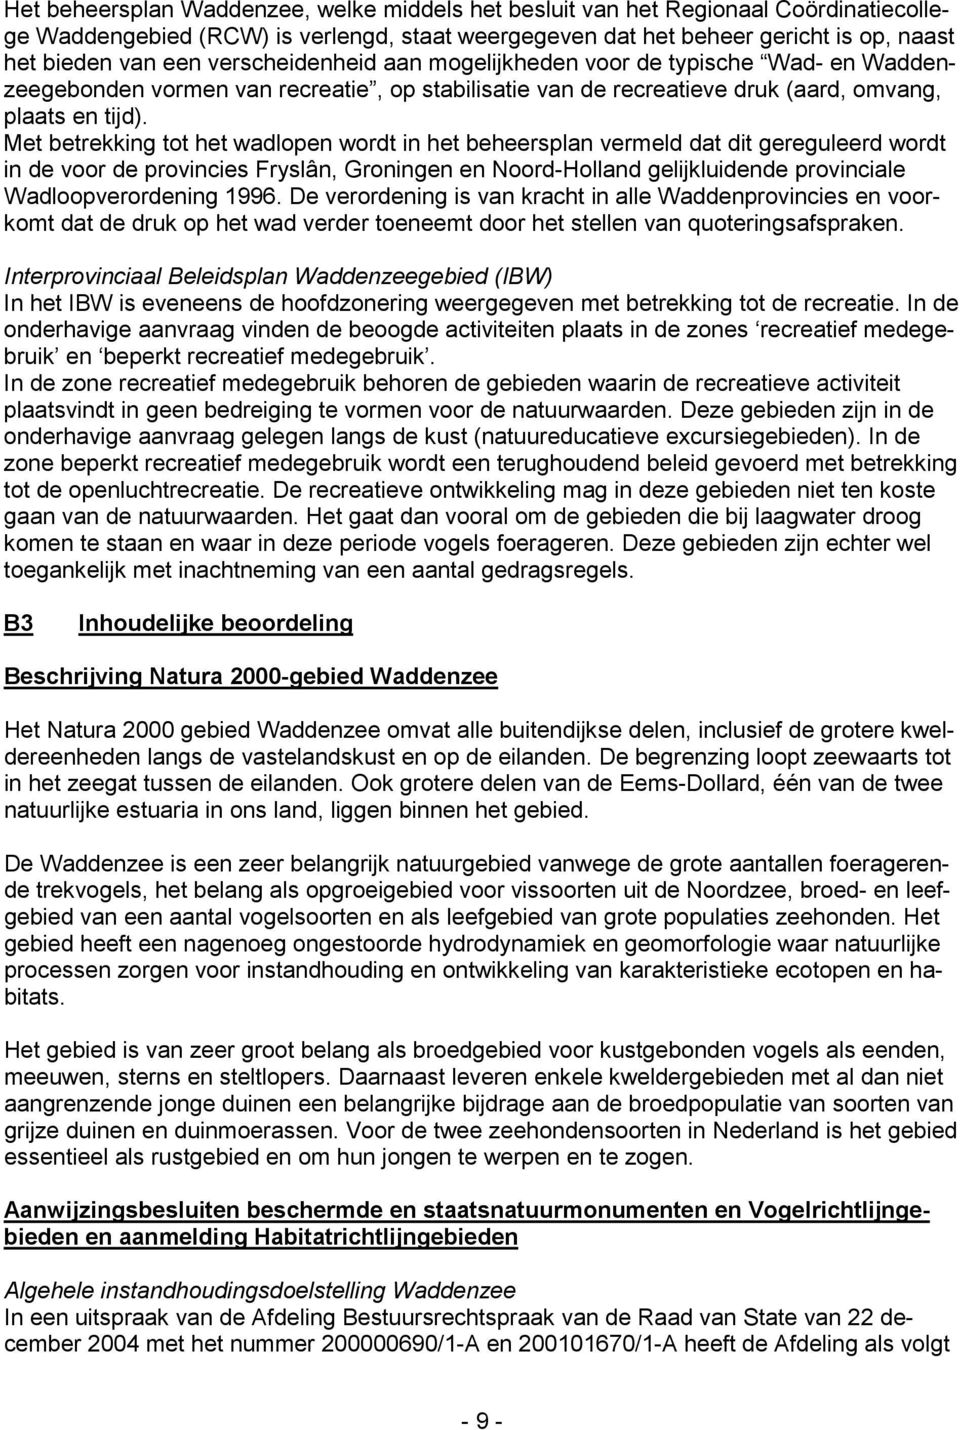 Met betrekking tot het wadlopen wordt in het beheersplan vermeld dat dit gereguleerd wordt in de voor de provincies Fryslân, Groningen en Noord-Holland gelijkluidende provinciale Wadloopverordening